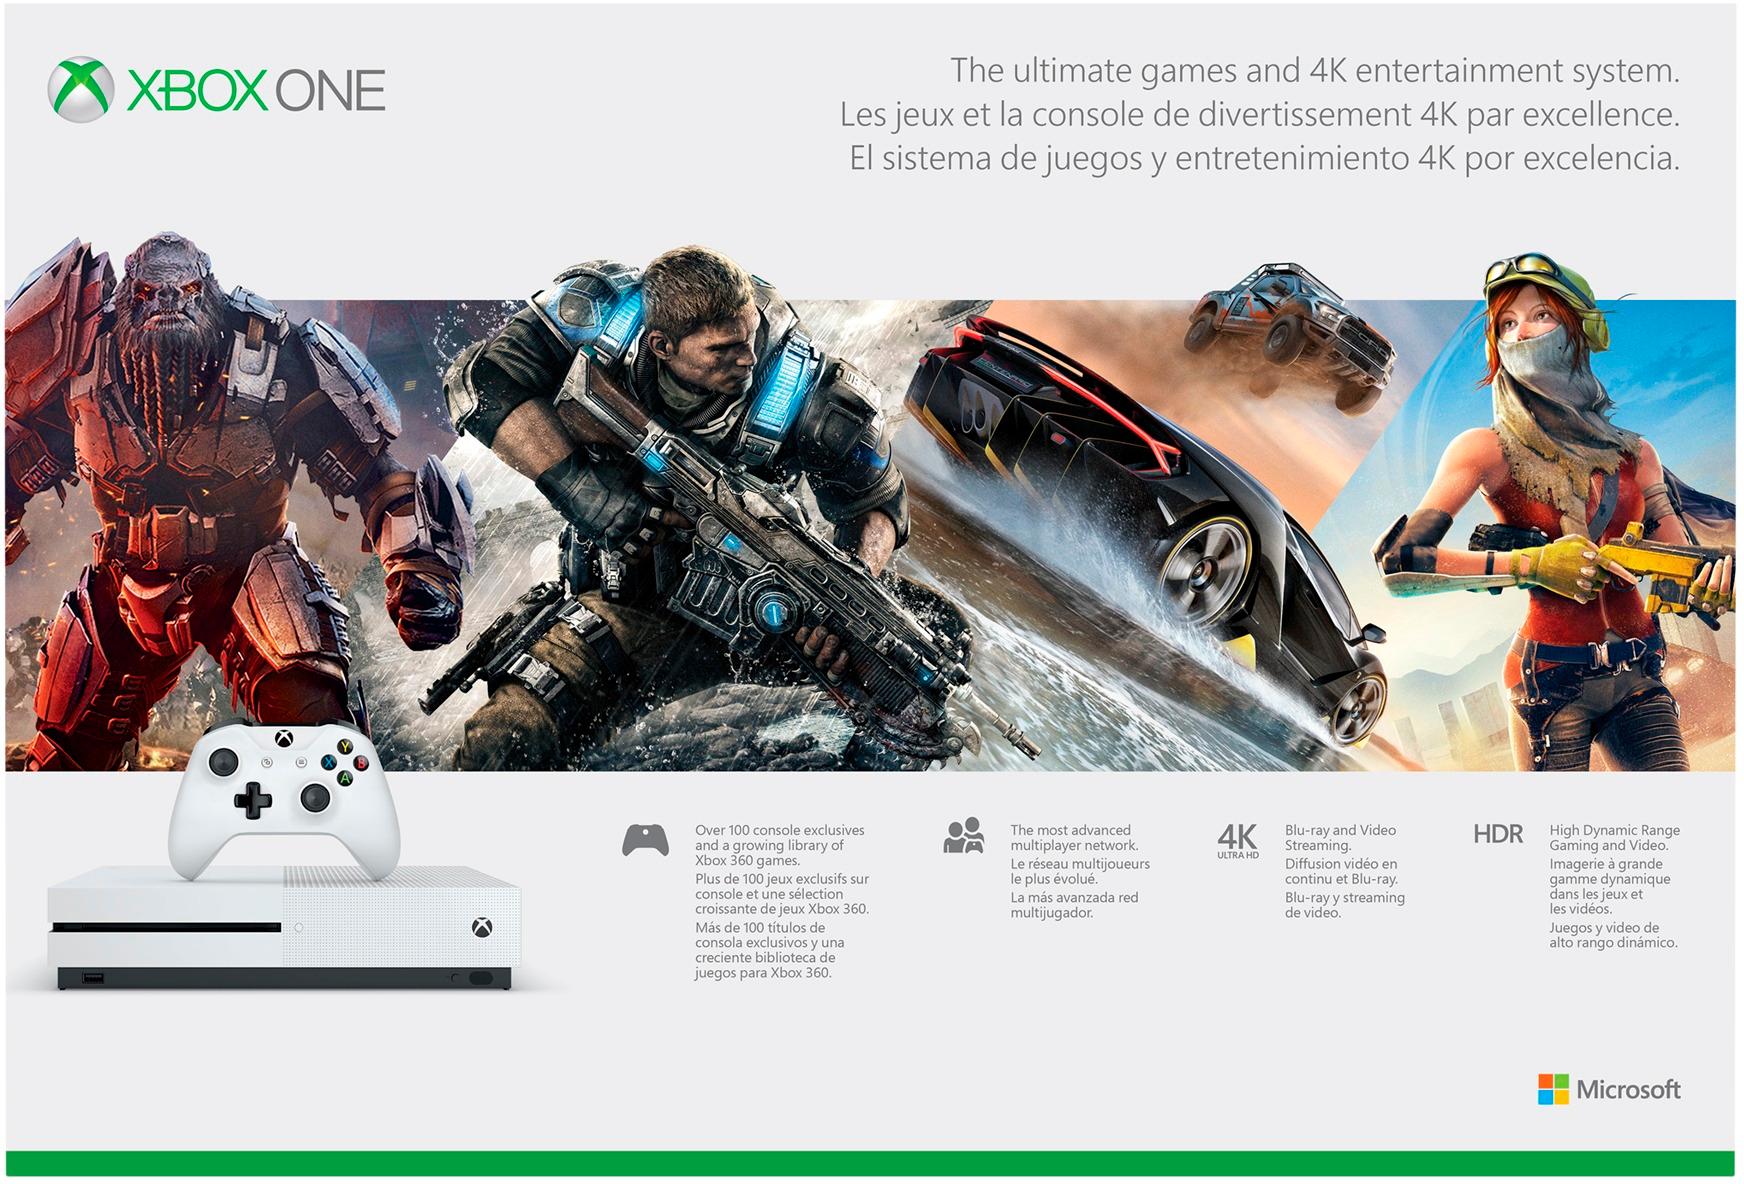 Microsoft Xbox One S 500GB Console - White